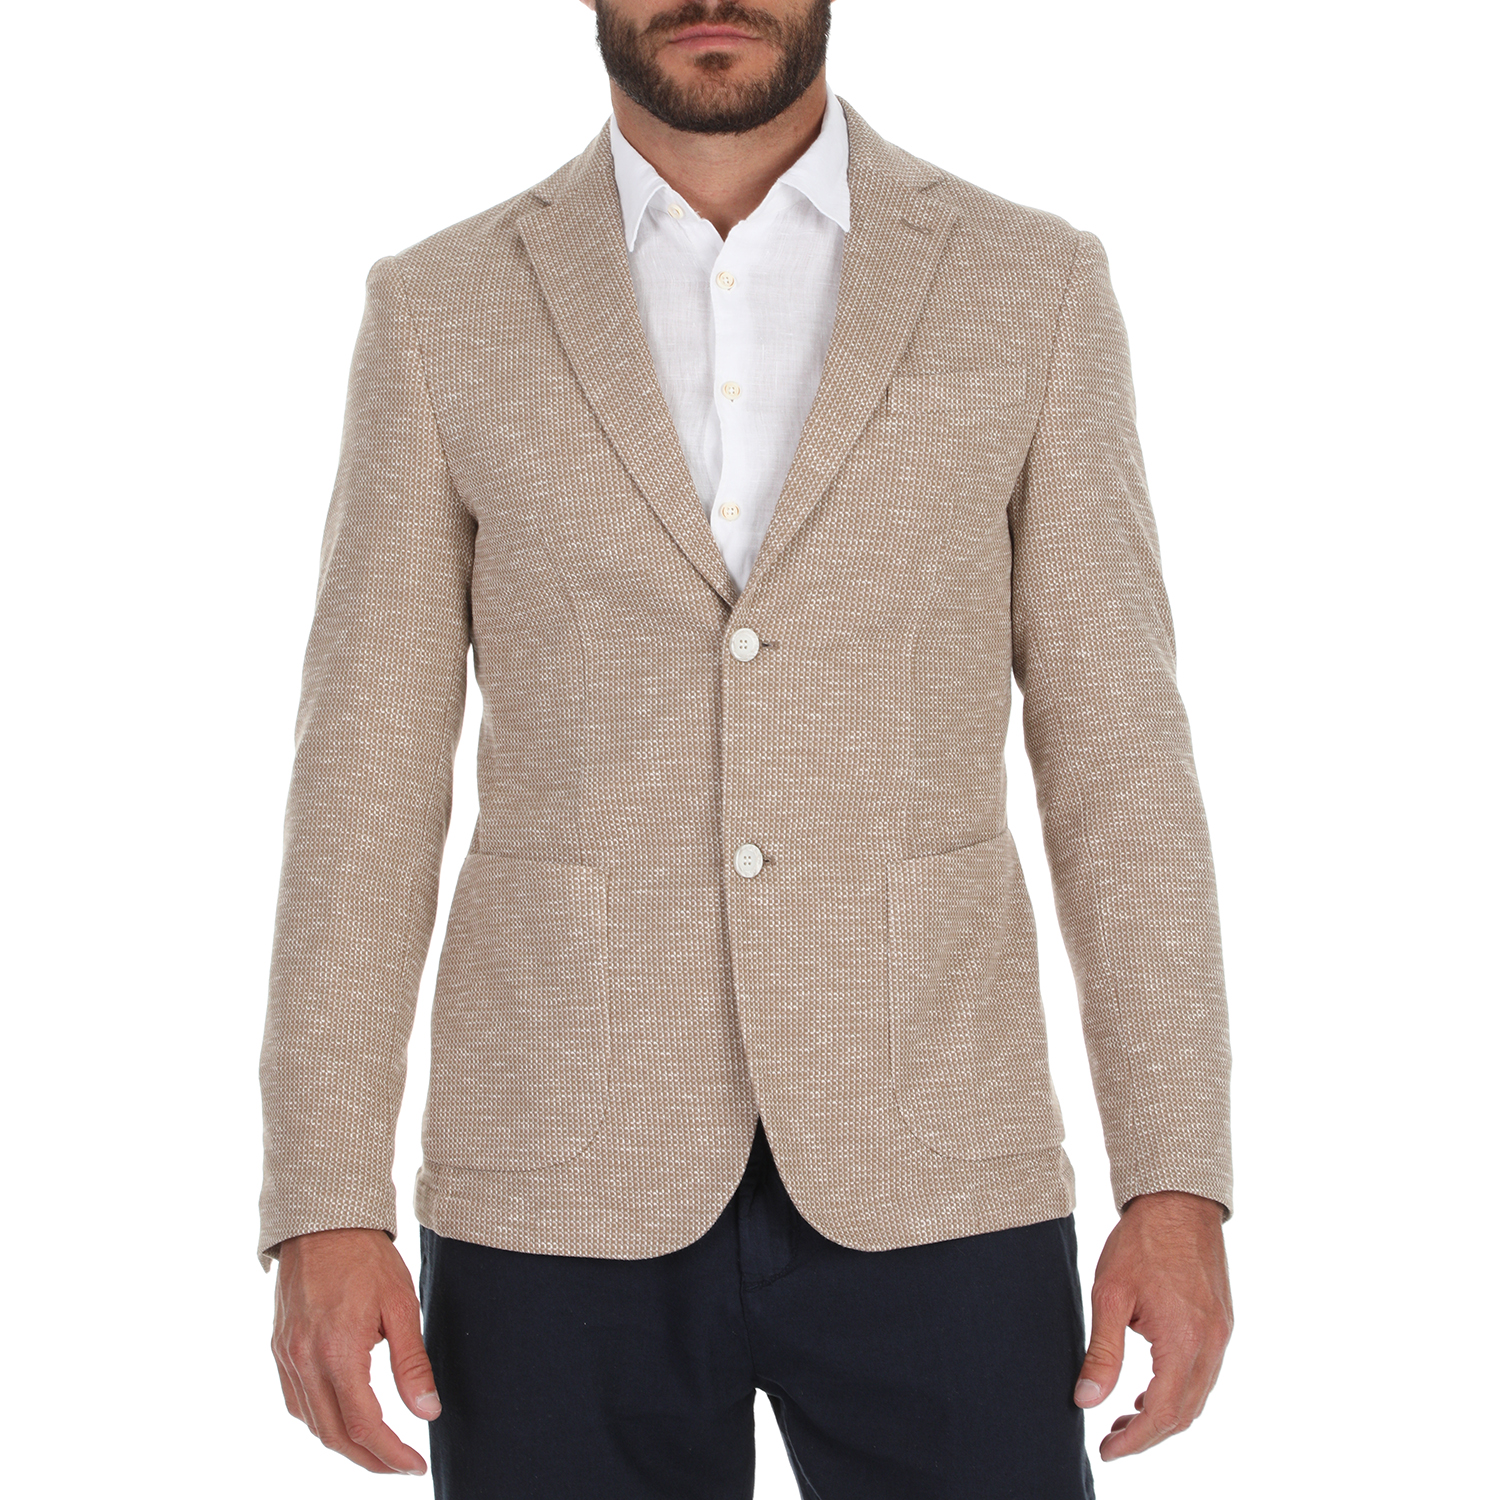 SSEINSE - Ανδρικό σακάκι blazer SSEINSE μπεζ Ανδρικά/Ρούχα/Πανωφόρια/Σακάκια